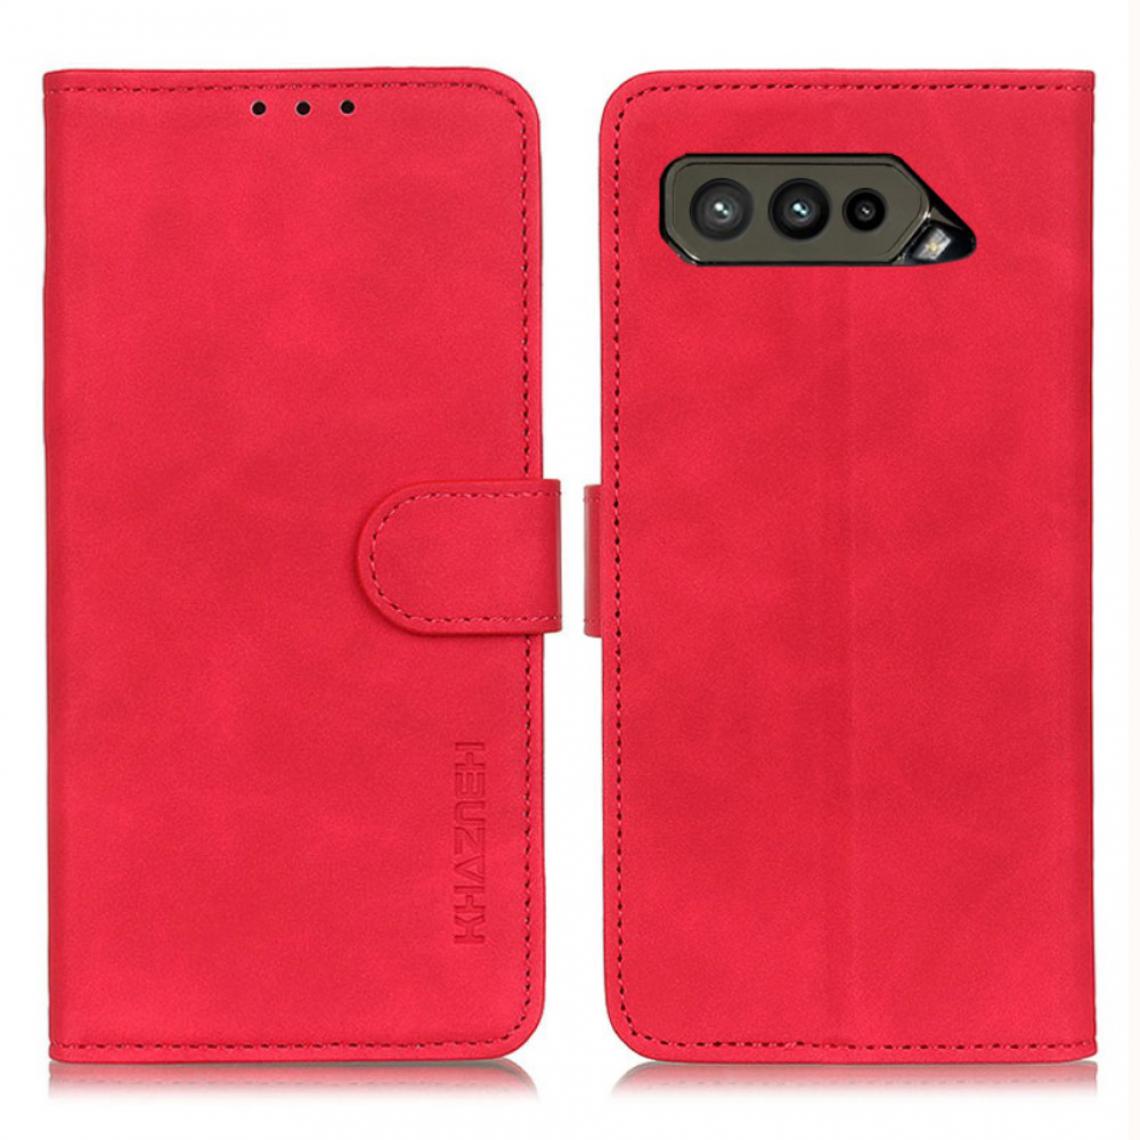 Other - Etui en PU Rétro avec support rouge pour votre Asus ROG Phone 5 Ultimate/ROG Phone 5 Pro/ROG Phone 5 - Coque, étui smartphone